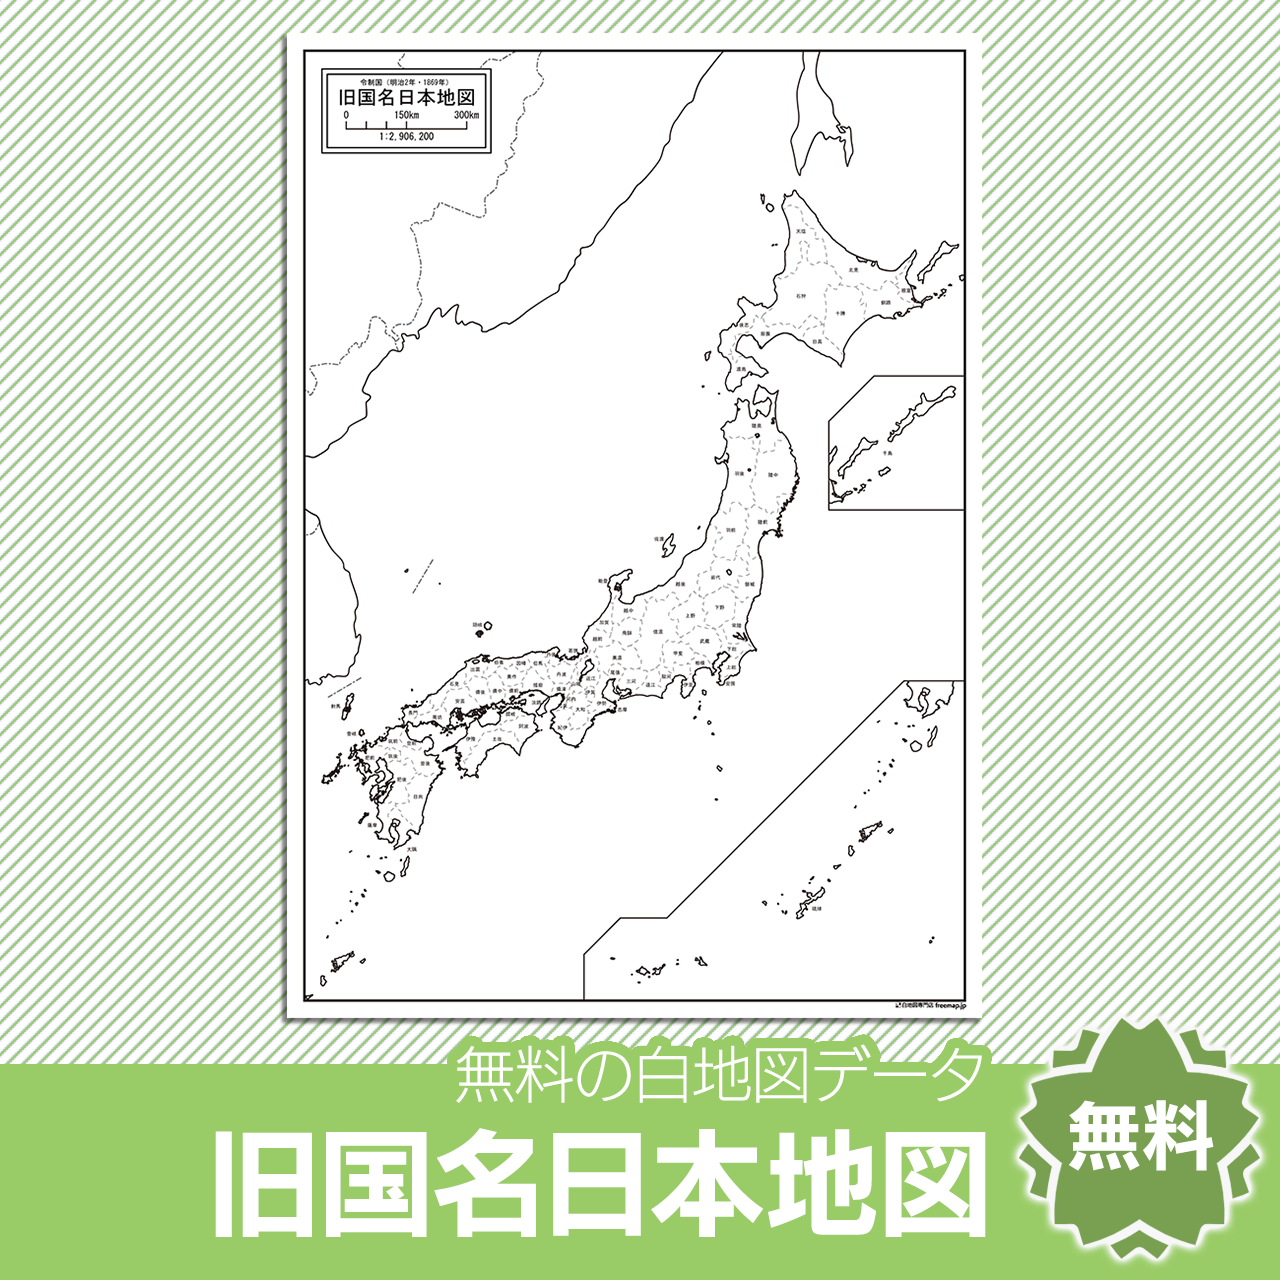 令制国時代の旧国名日本地図のサムネイル